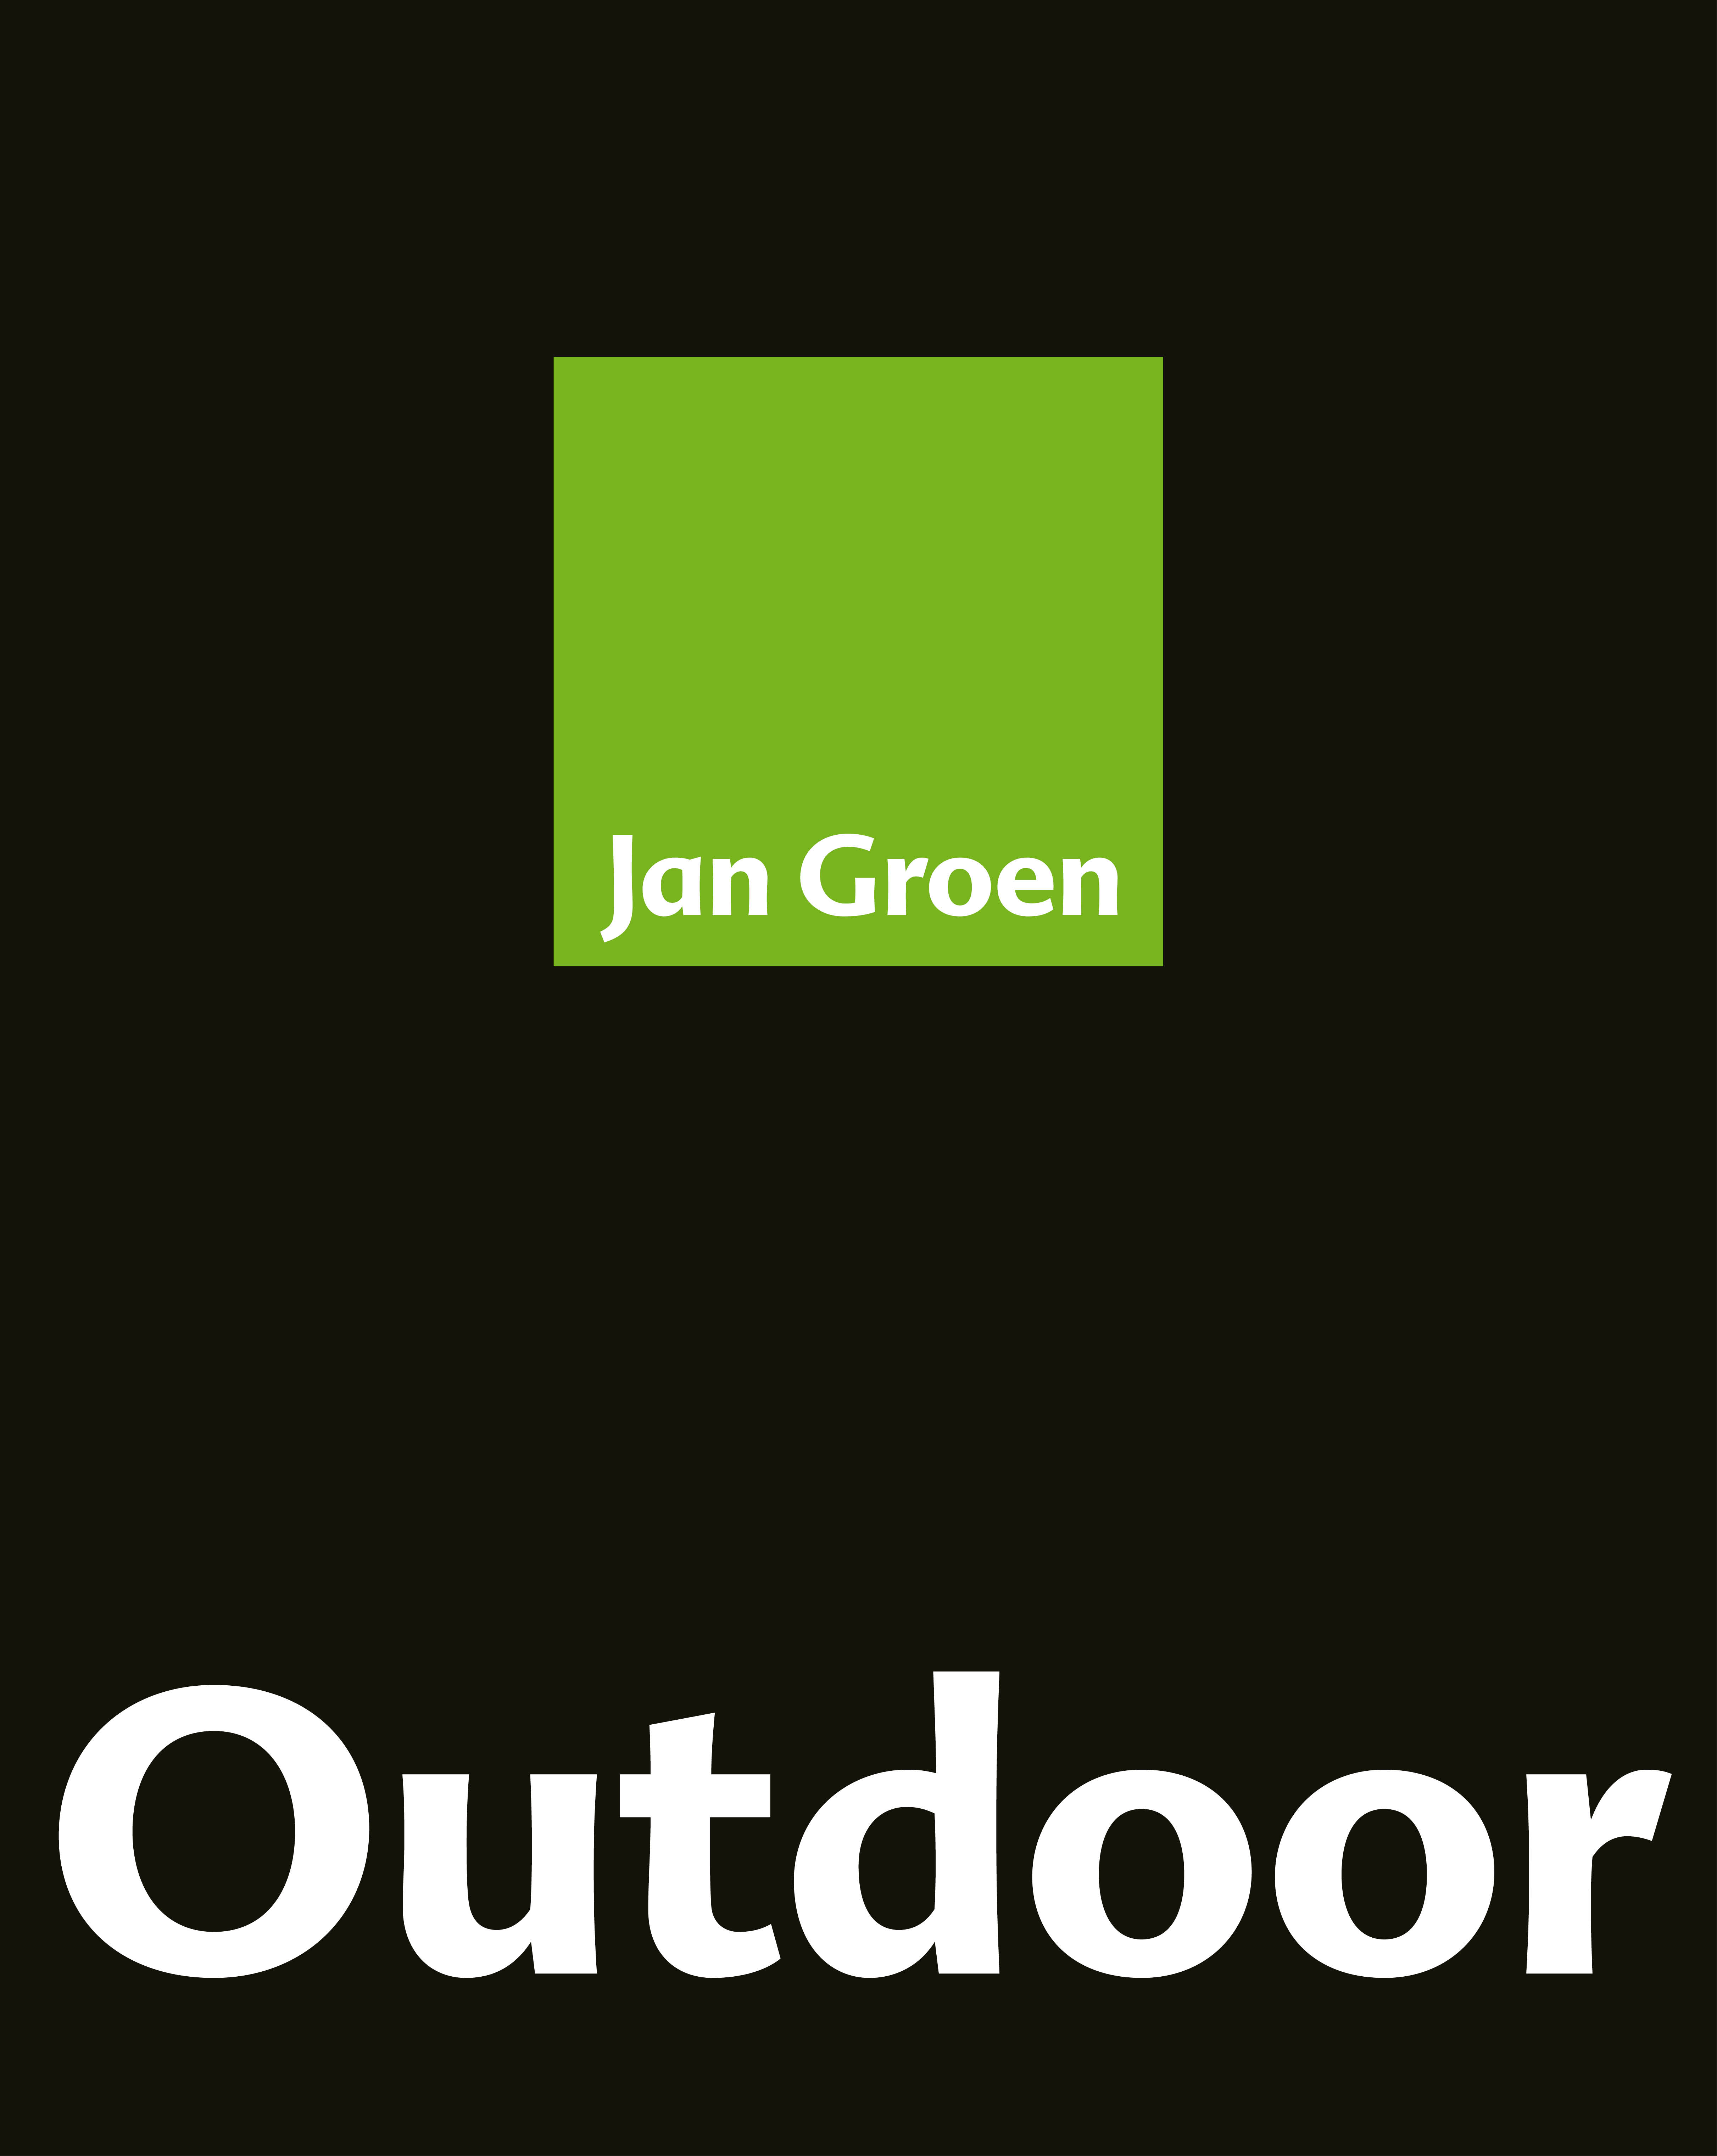 Jan Groen Outdoor